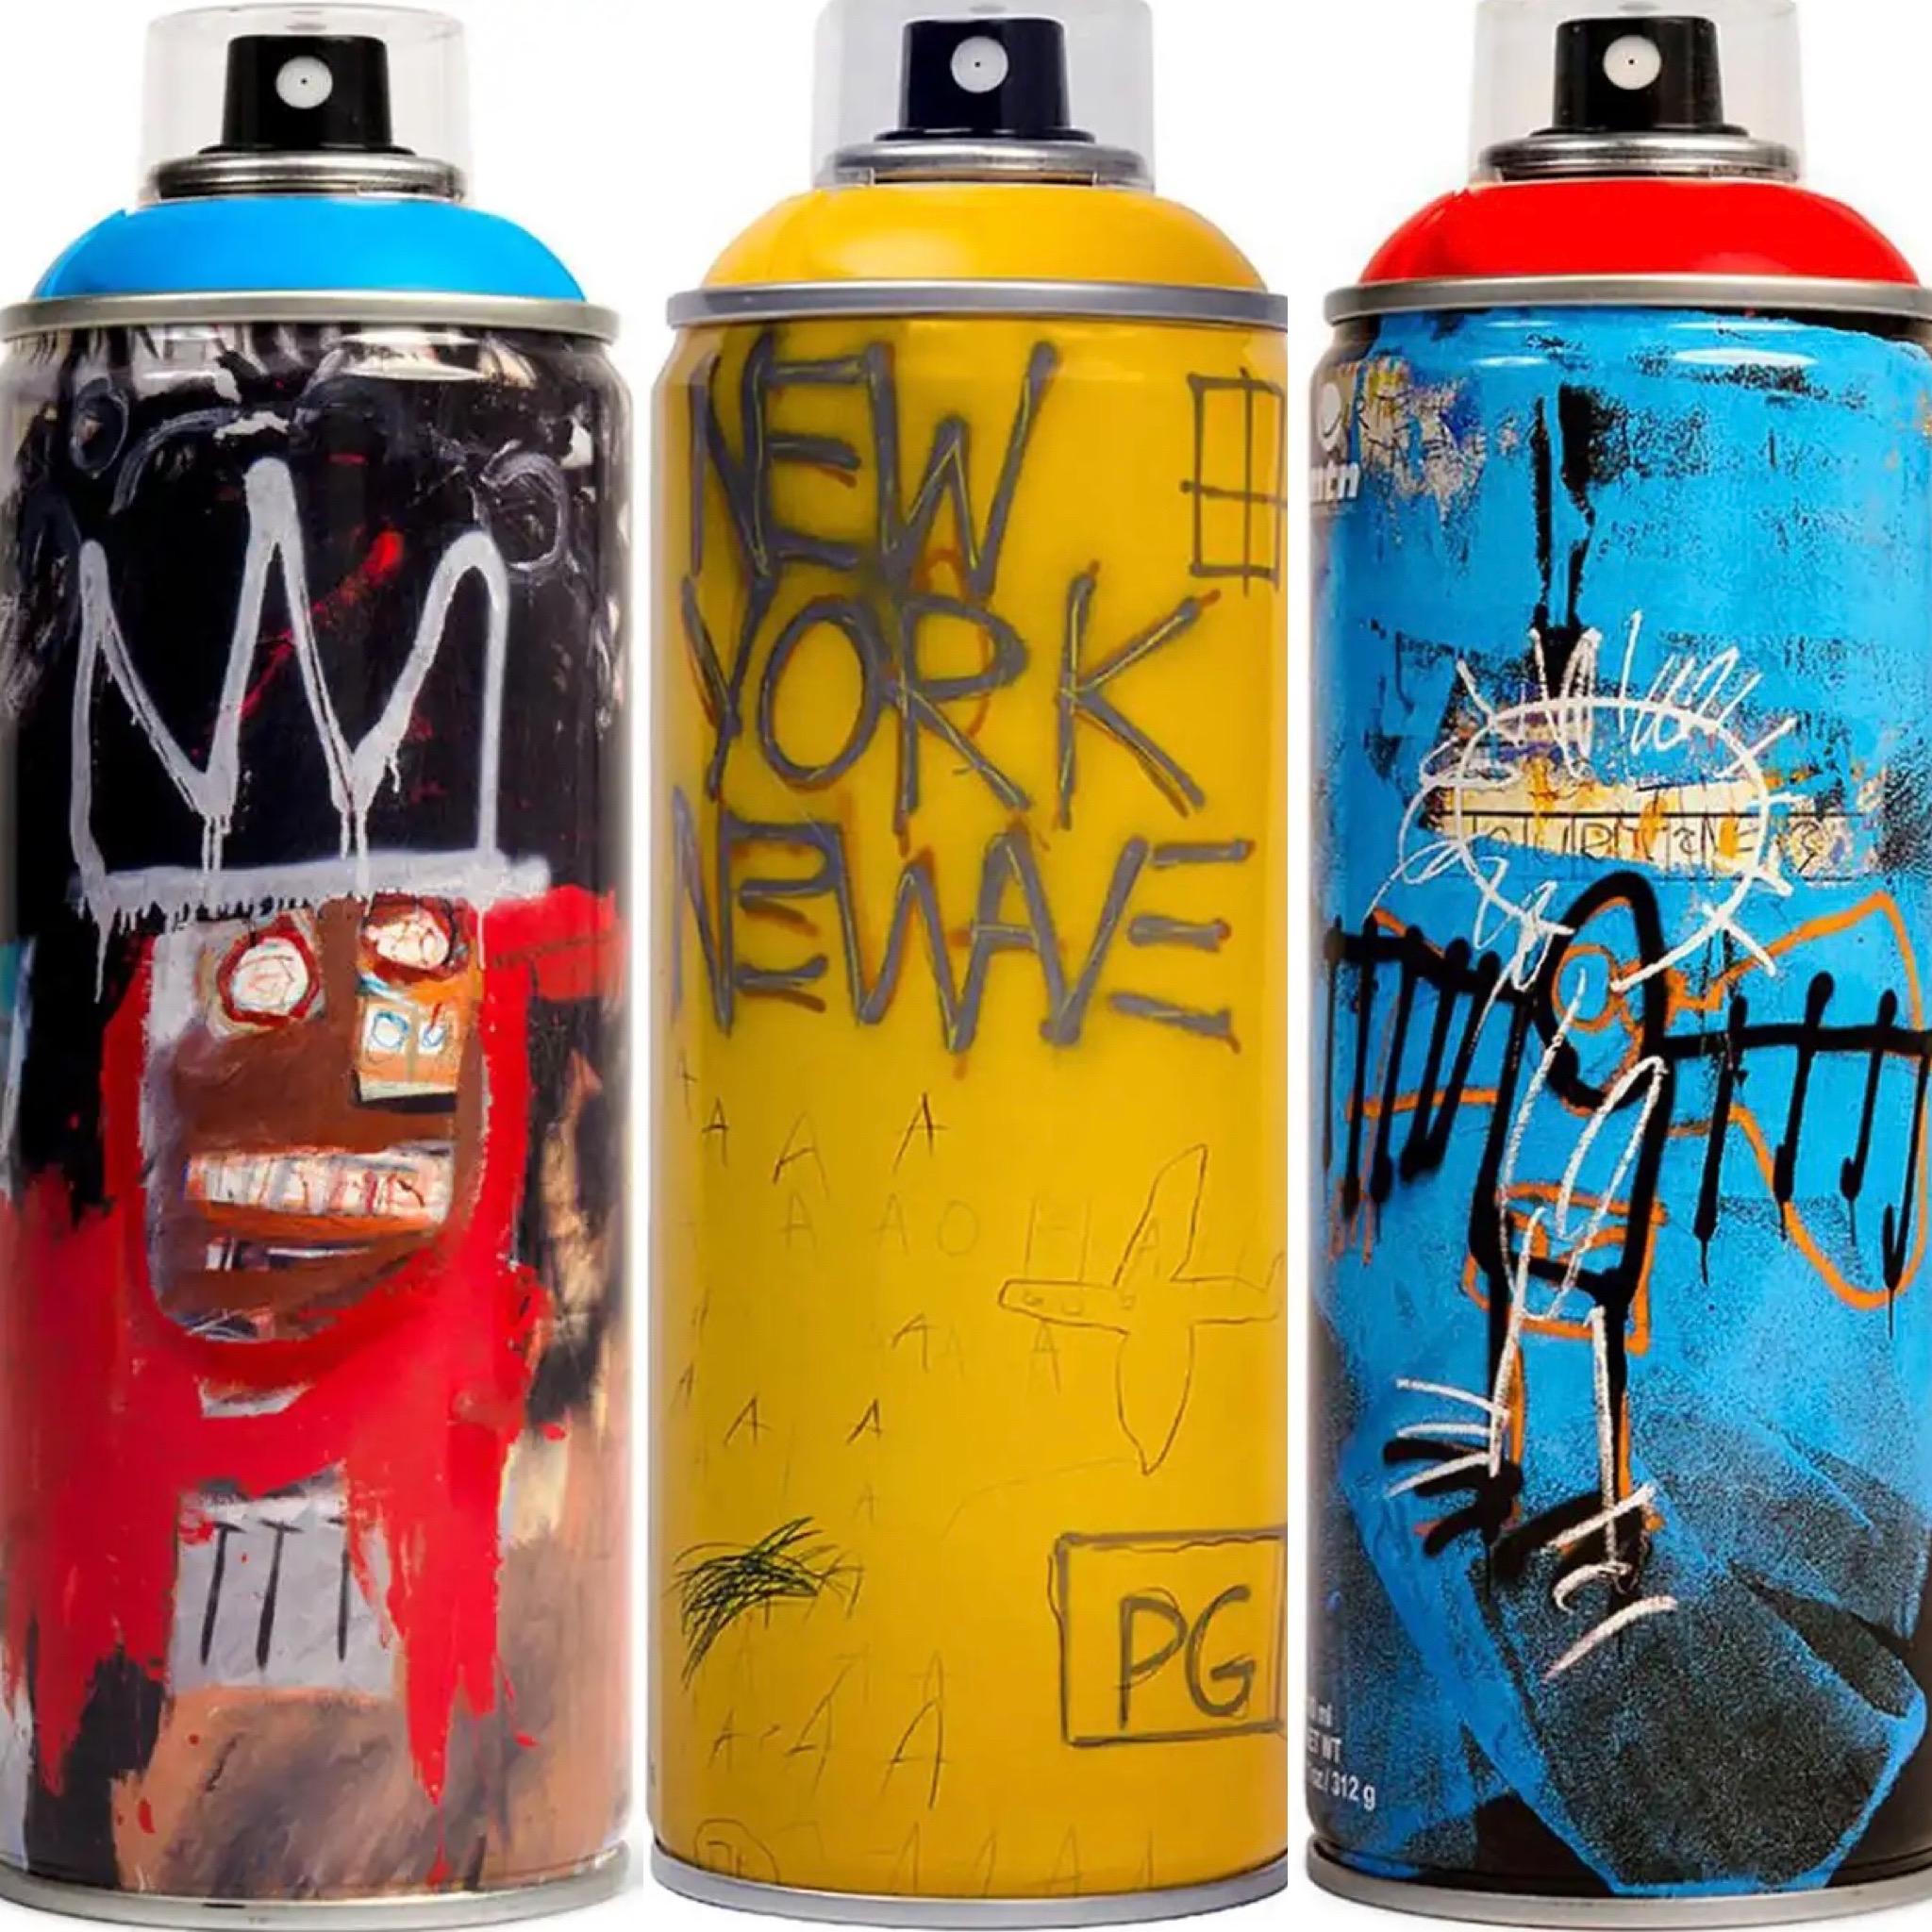 Édition limitée du set de peinture en spray Basquiat - Mixed Media Art de after Jean-Michel Basquiat